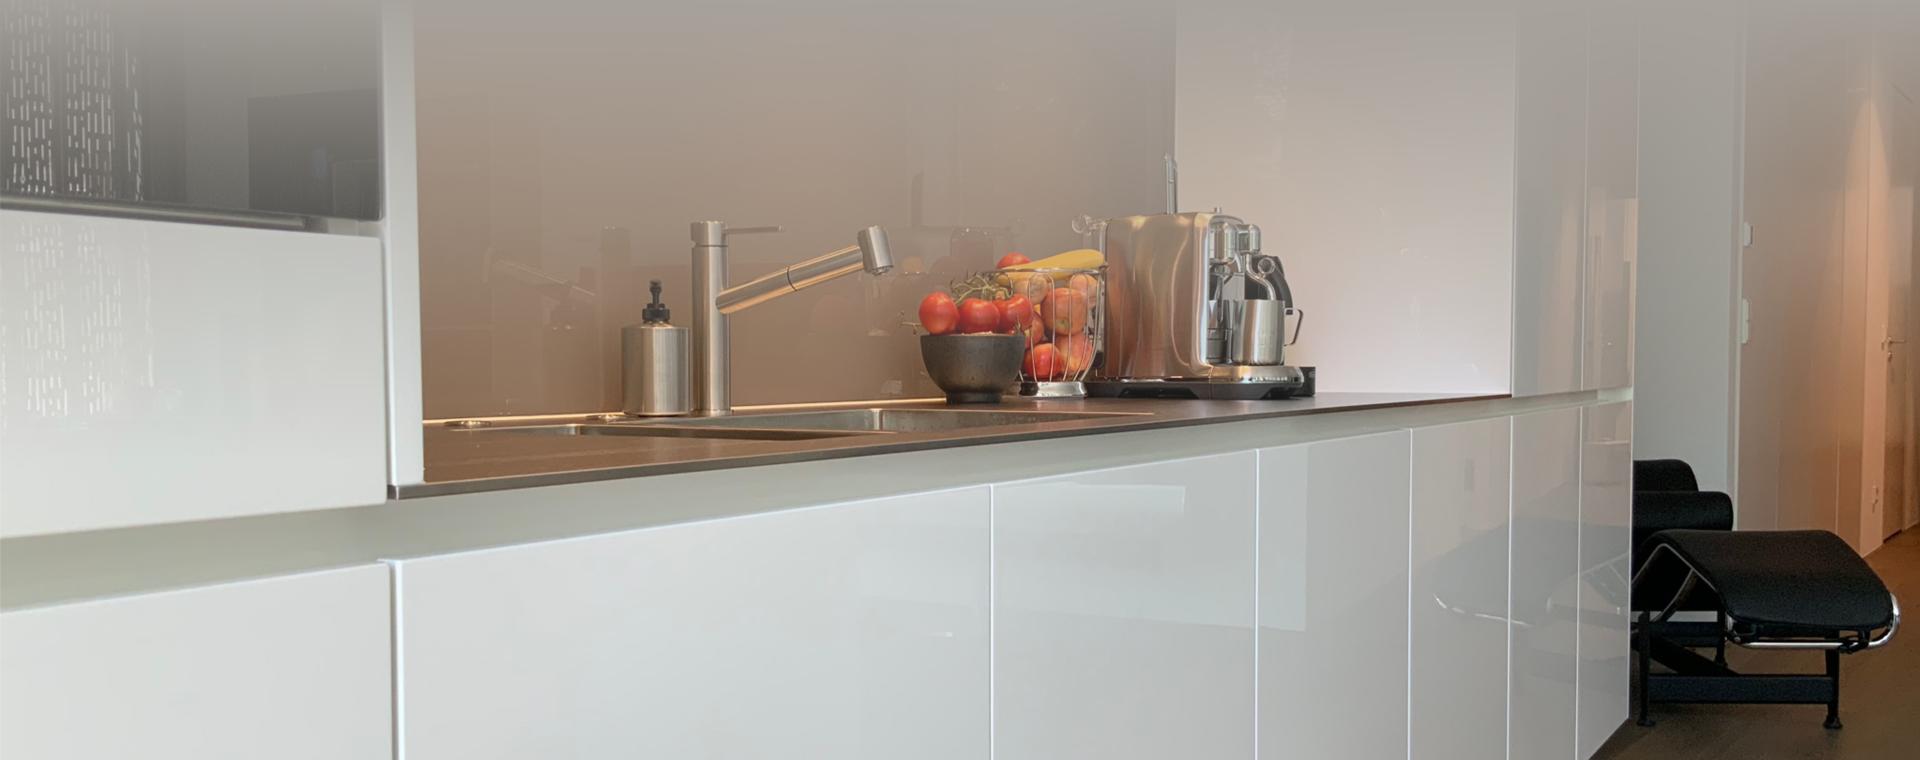 Küche in Hochglanz Weiß mit Arbeitsplatten in 8mm Pure-Steel-Edelstahl und Küchengeräten von Bora und Miele